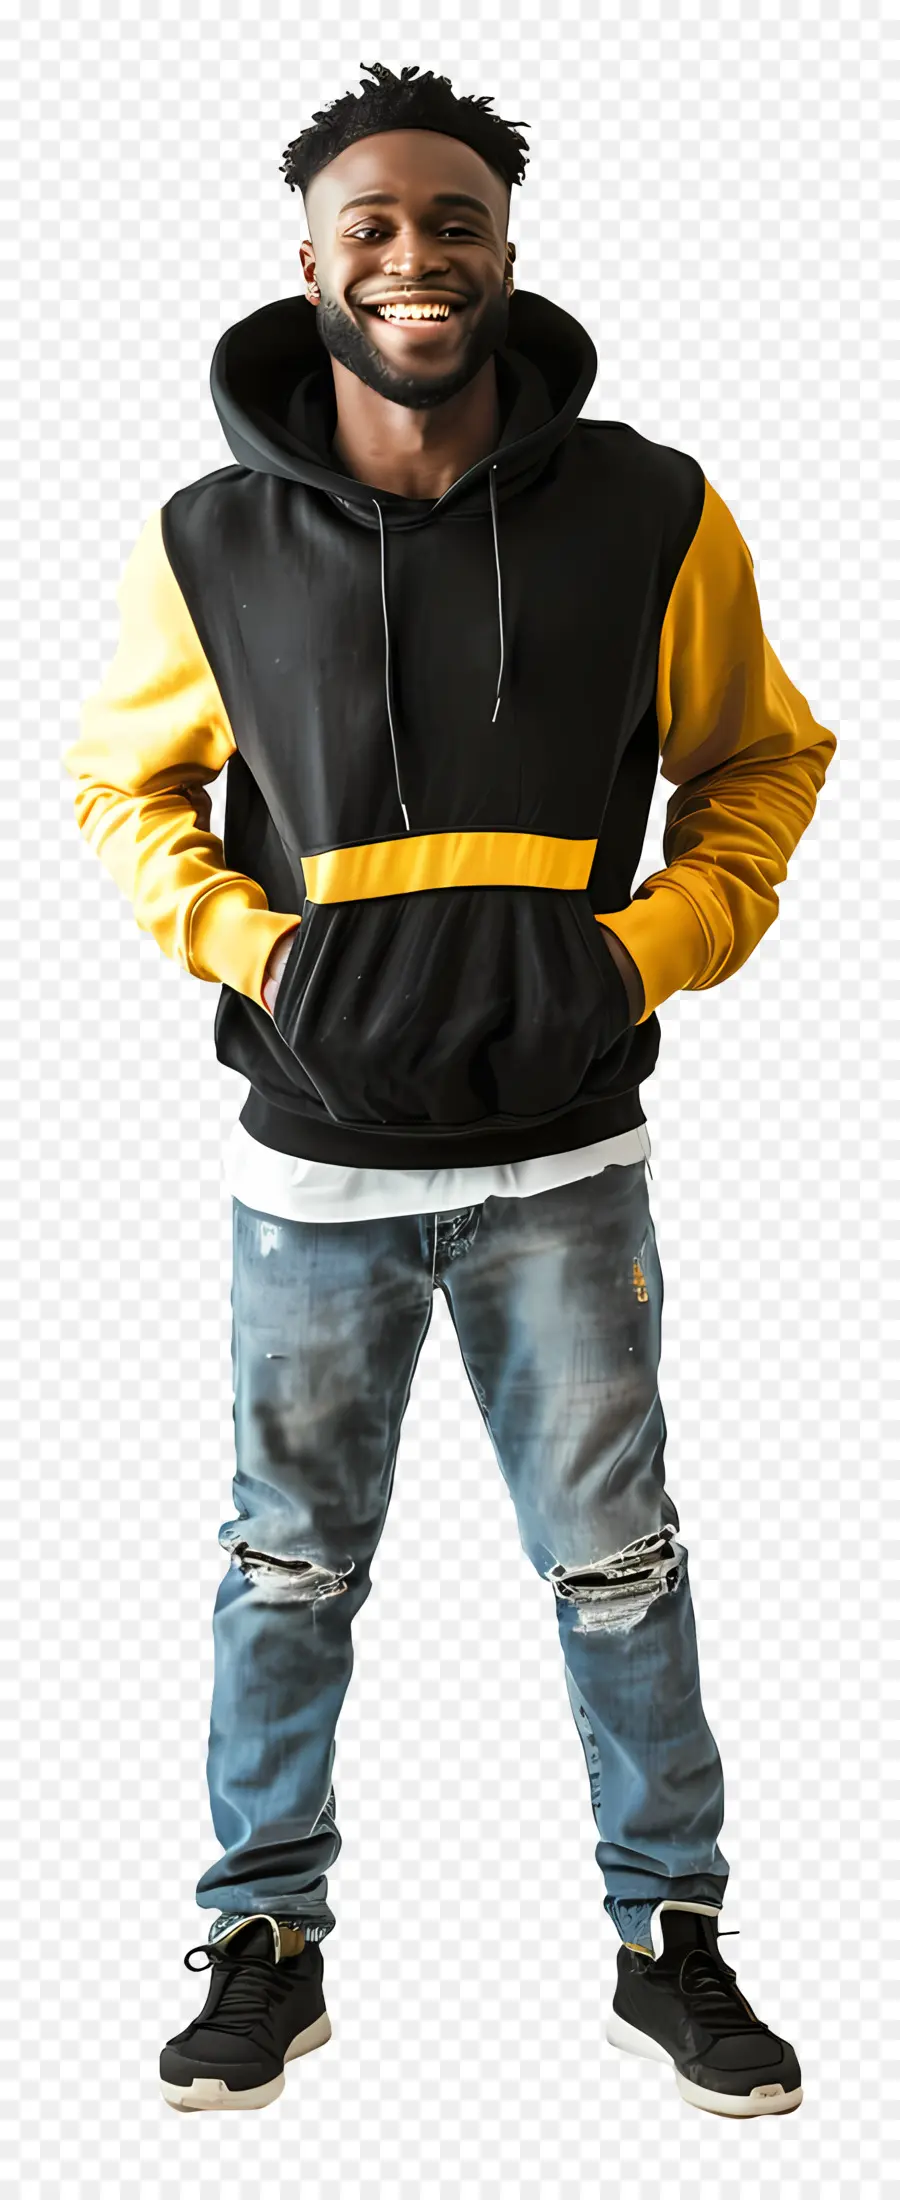 Black Man Expite Black Hoodie Black e giallo jeans sorridenti con buchi - Uomo in cappuccio nero e giallo sorridente